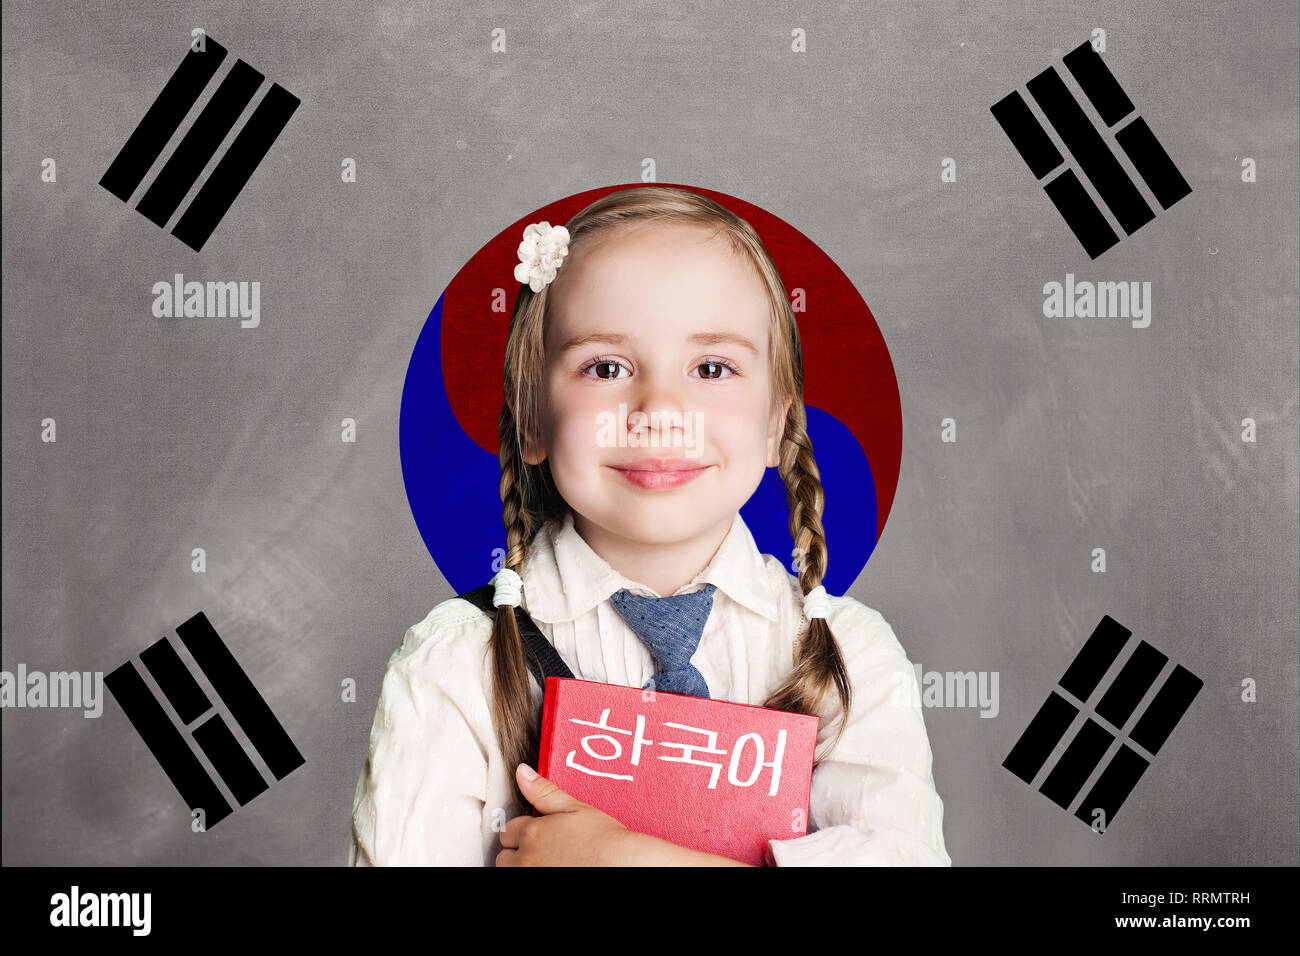 Corée du Sud concept avec kid petite fille avec l'élève contre le livre rouge du drapeau de la Corée du Sud l'arrière-plan. Apprendre la langue de la Corée du Sud Banque D'Images